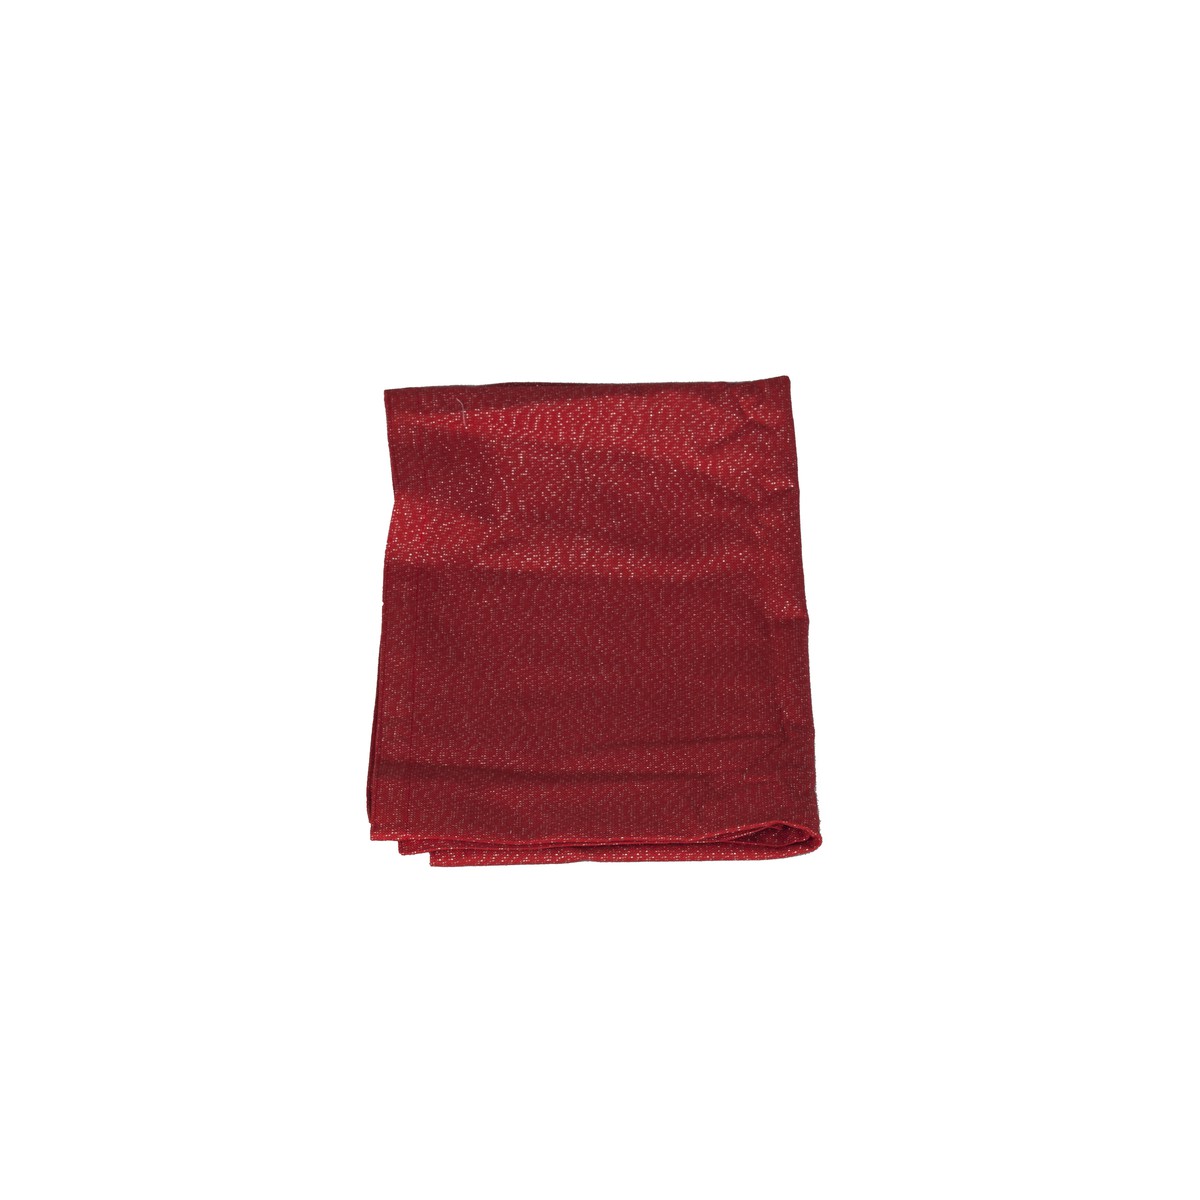 Schilliger Design Cubex Chemin de table Cubex rouge-argent Rouge cerise 45x145cm